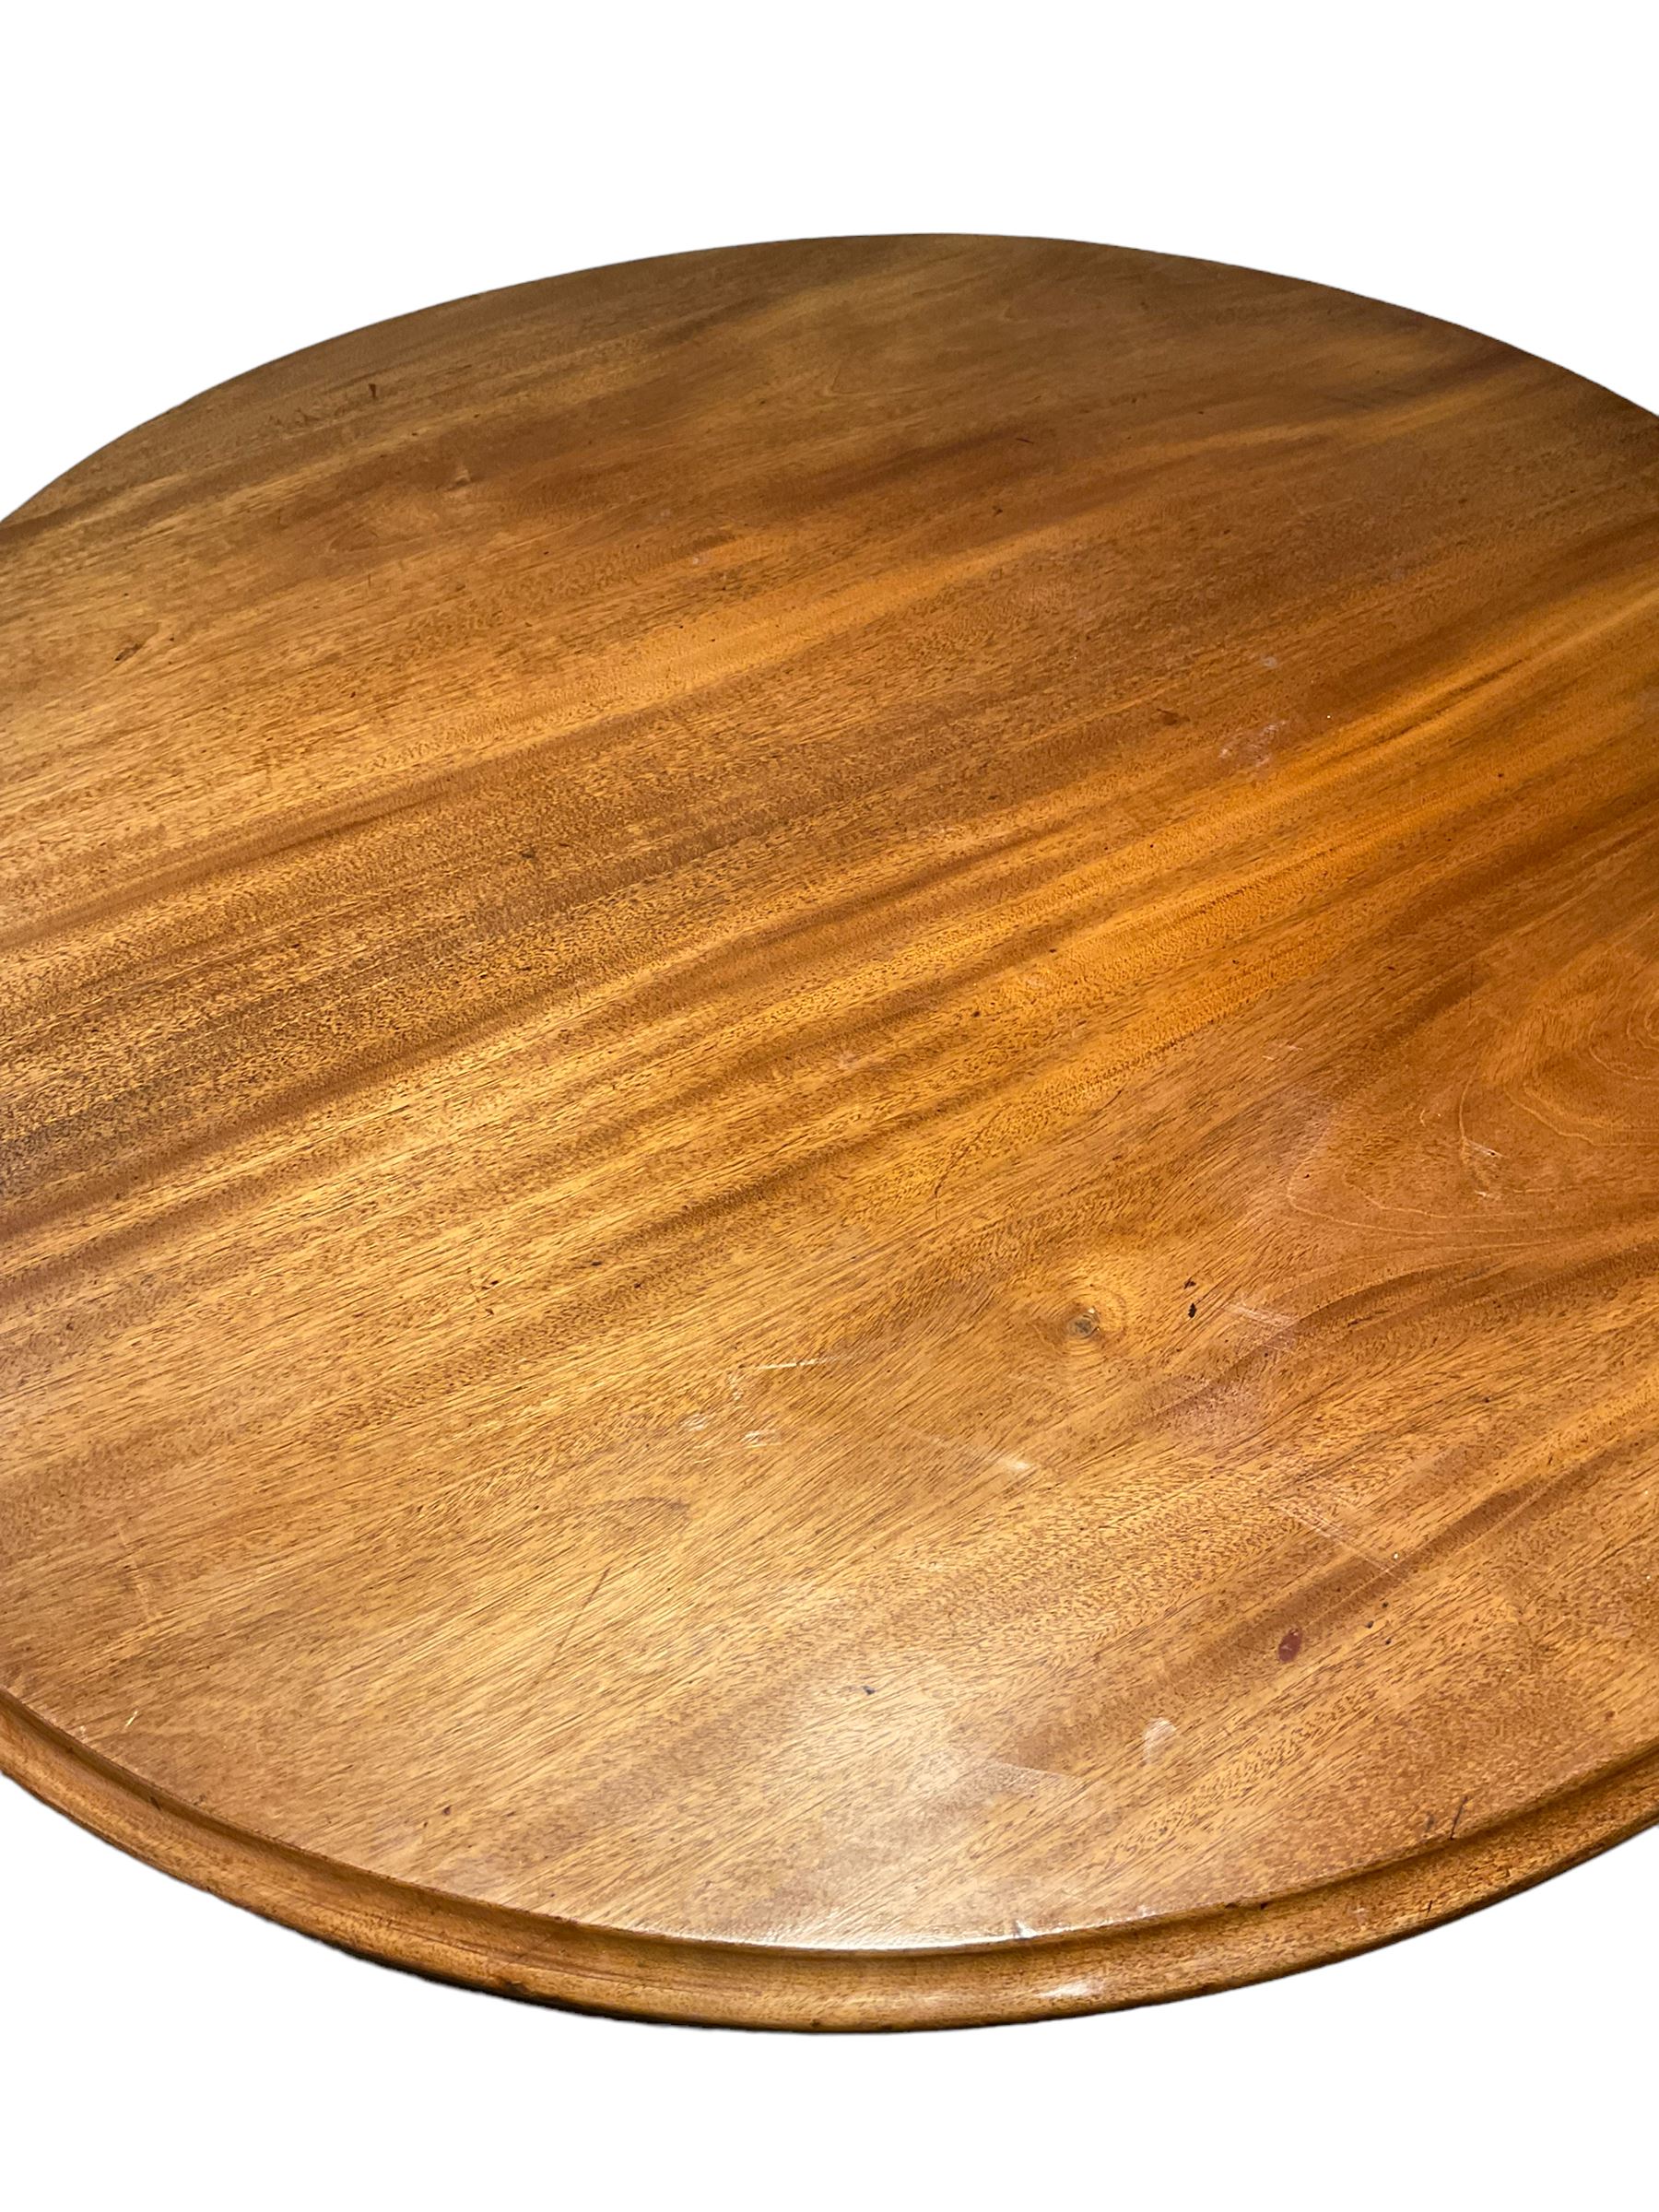 Victorian mahogany breakfast table - Image 3 of 3